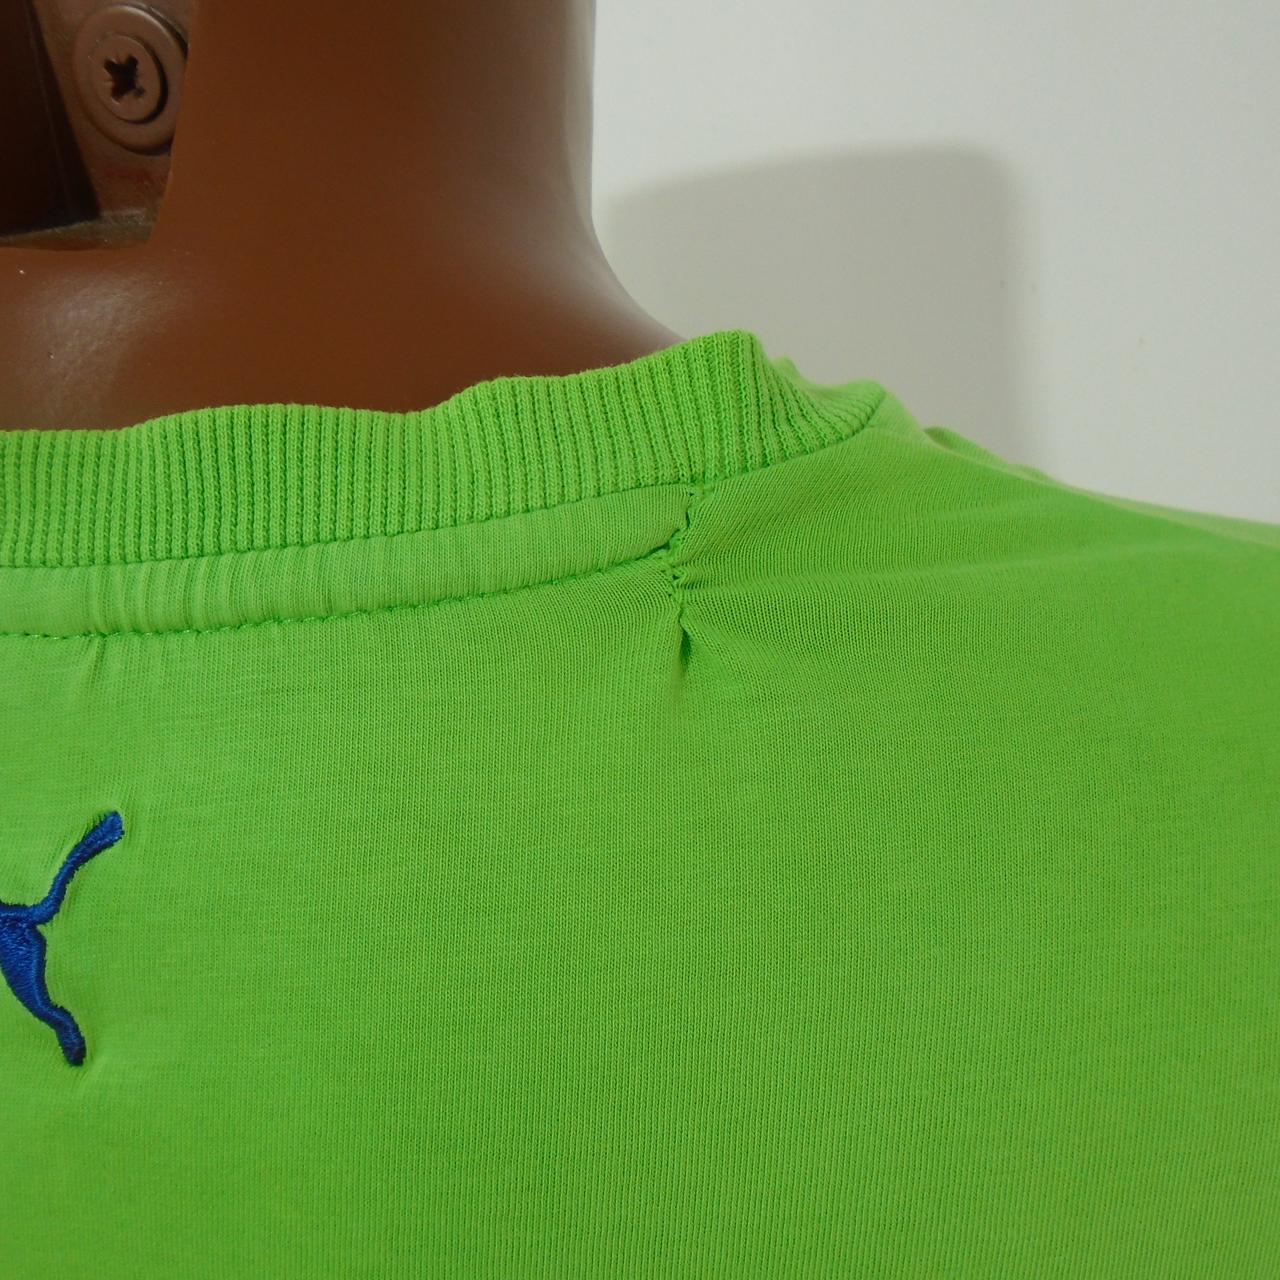 Herren T-Shirt Puma.  Grün.  L. gebraucht.  Gut